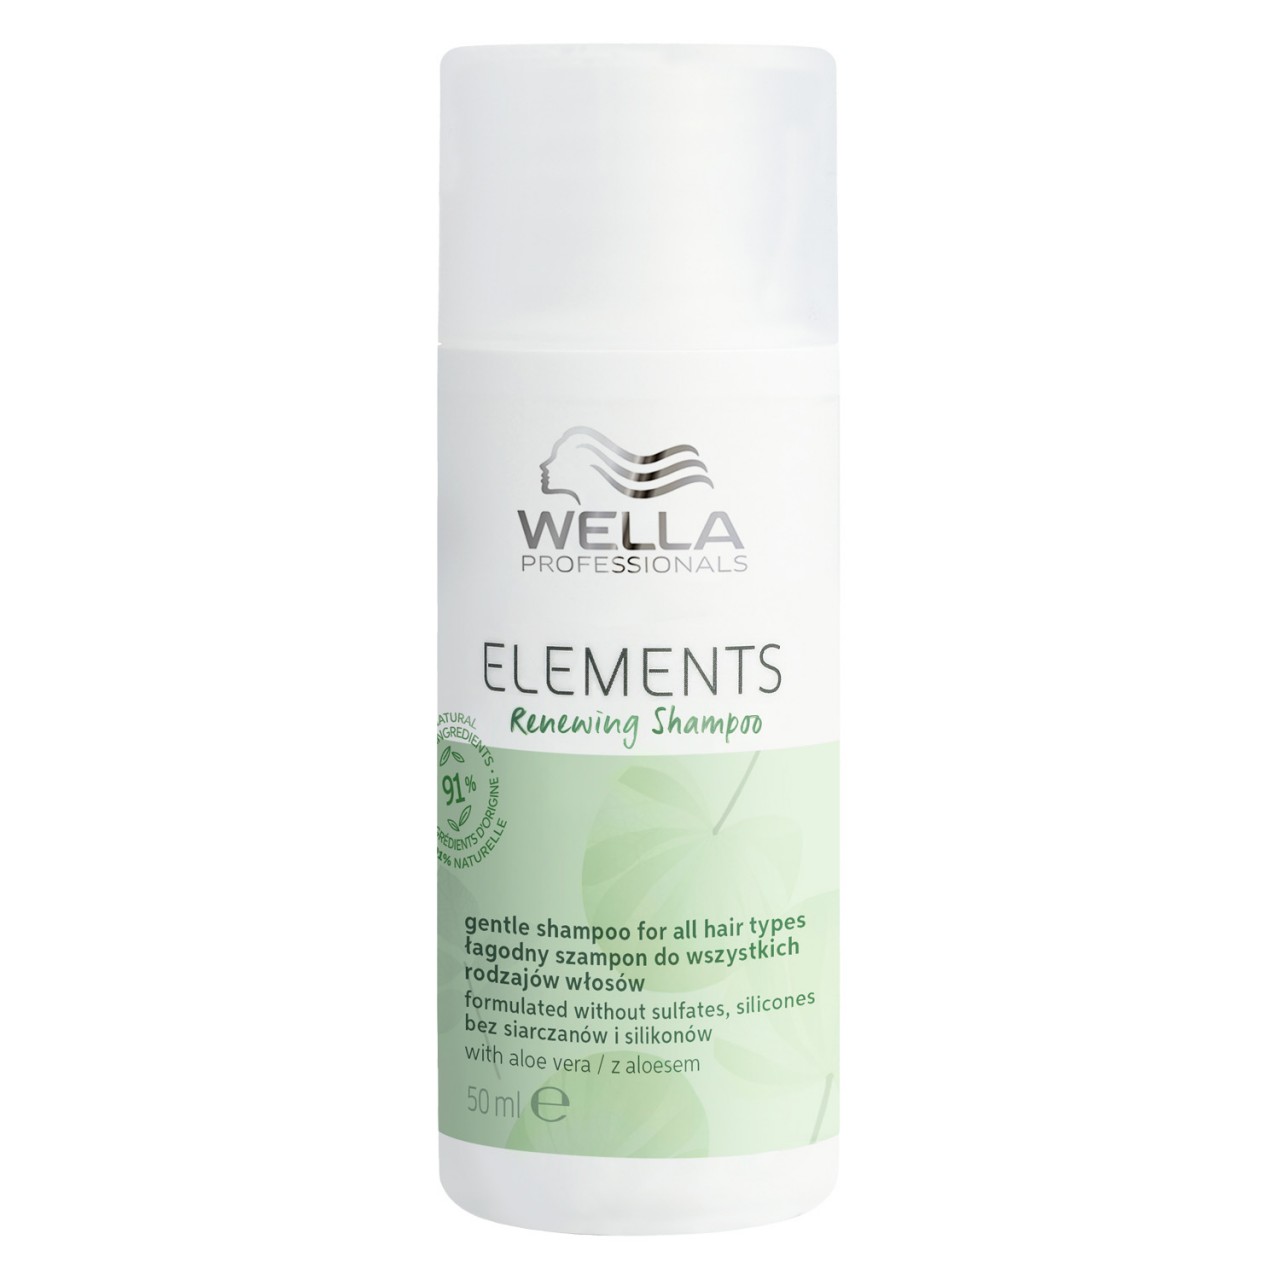 Elements - Renewing Shampoo von Wella